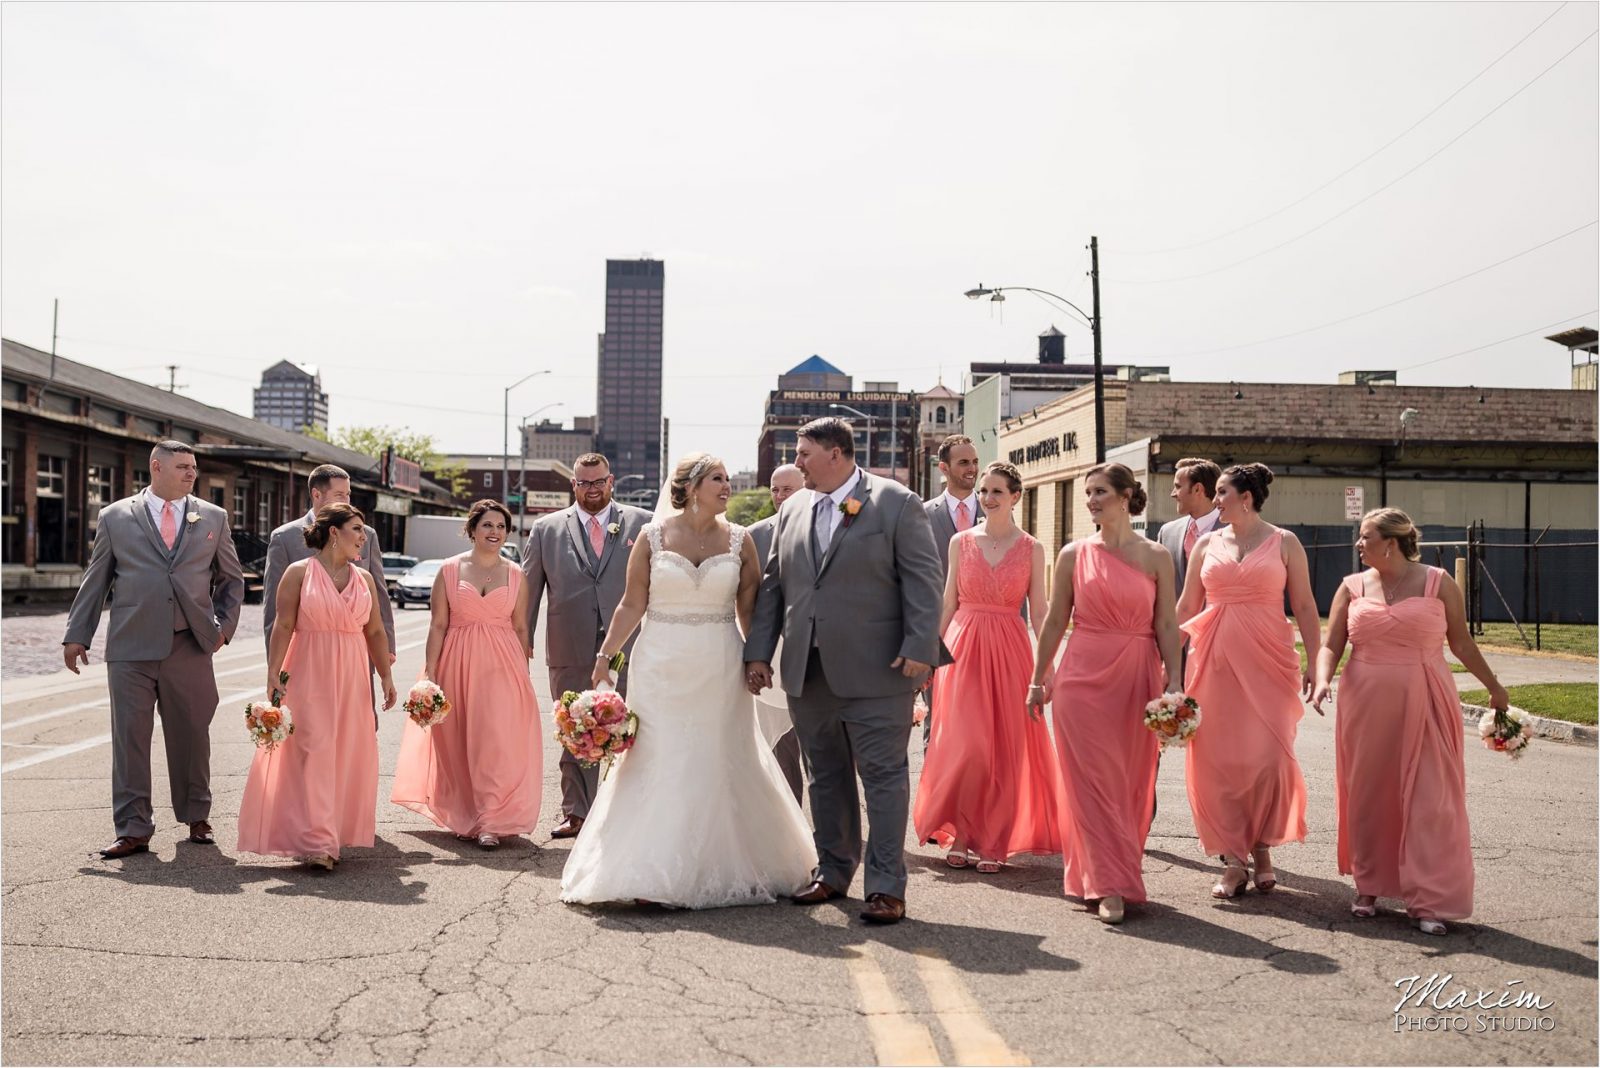 Top of the Market Dayton Ohio Wedding Downtown bridal party